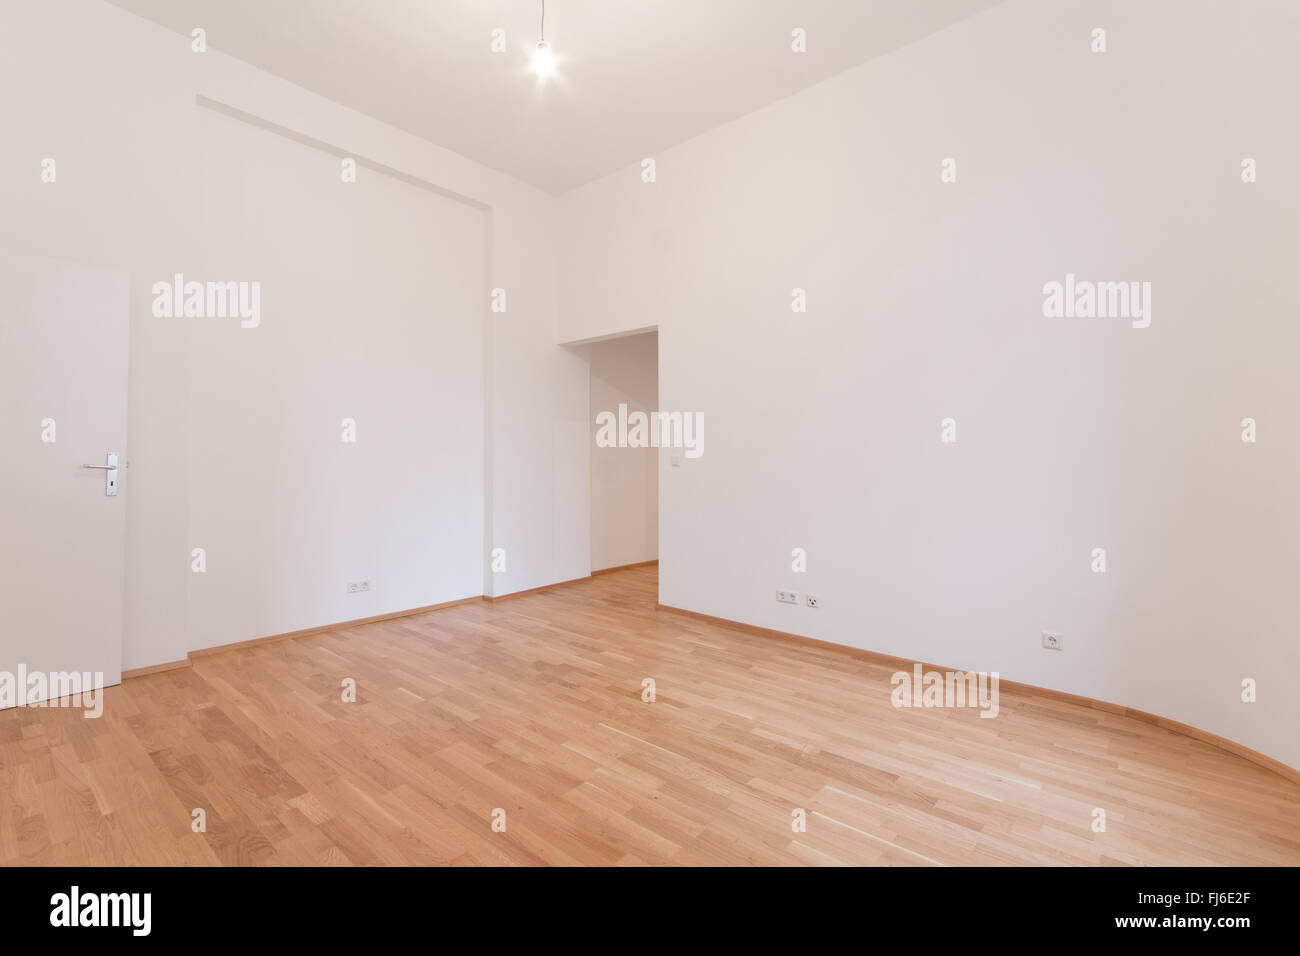 Rénové appartement - salle vide, murs blancs, parquet au sol Banque D'Images